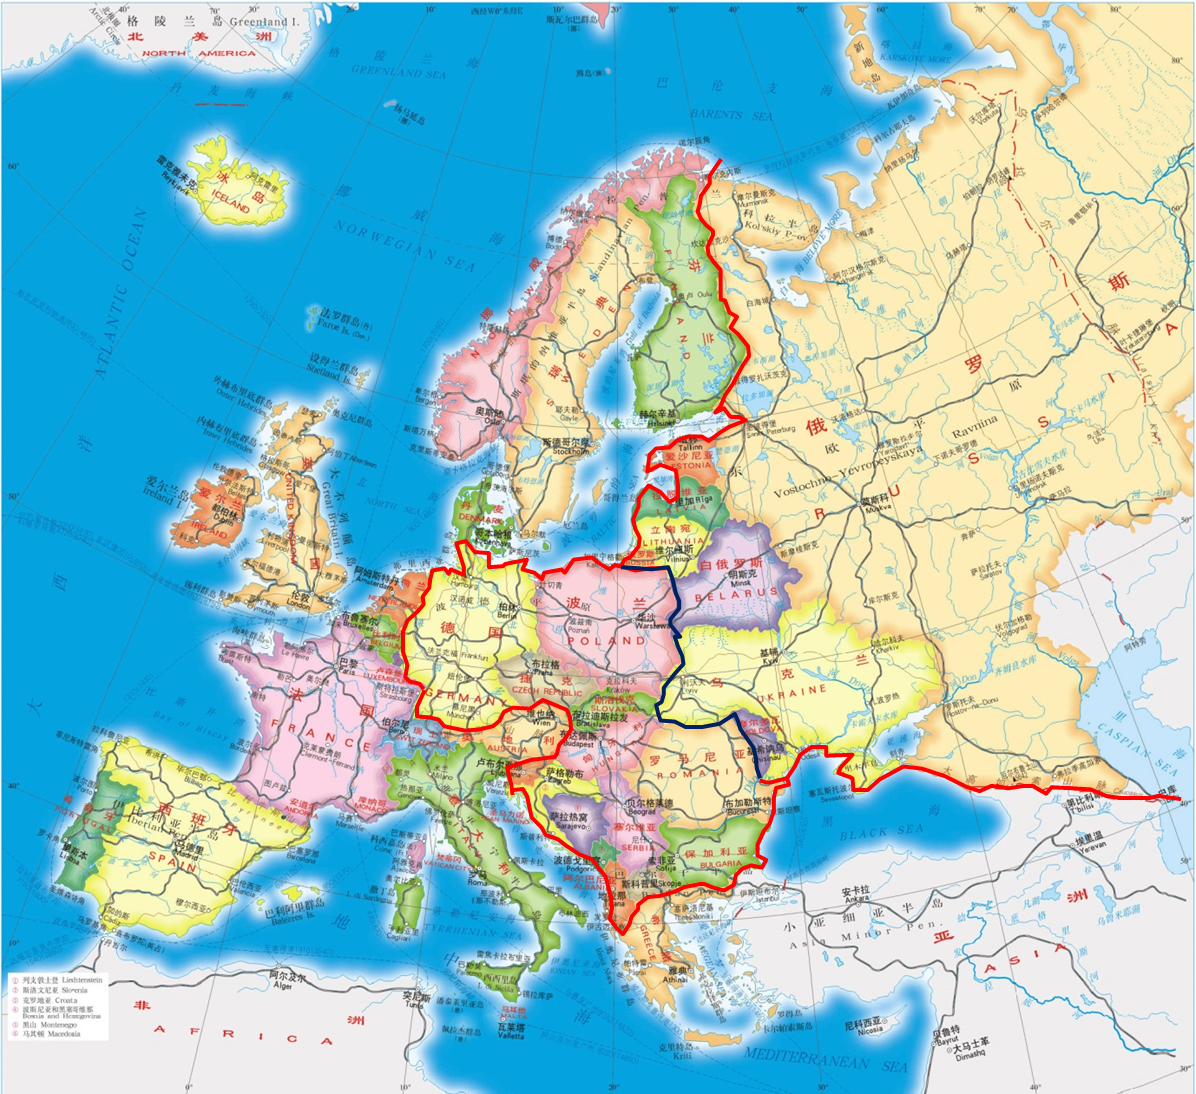 狭义上的北欧特指北欧理事会的五个主权国家：丹麦、瑞典、挪威、芬兰、冰岛